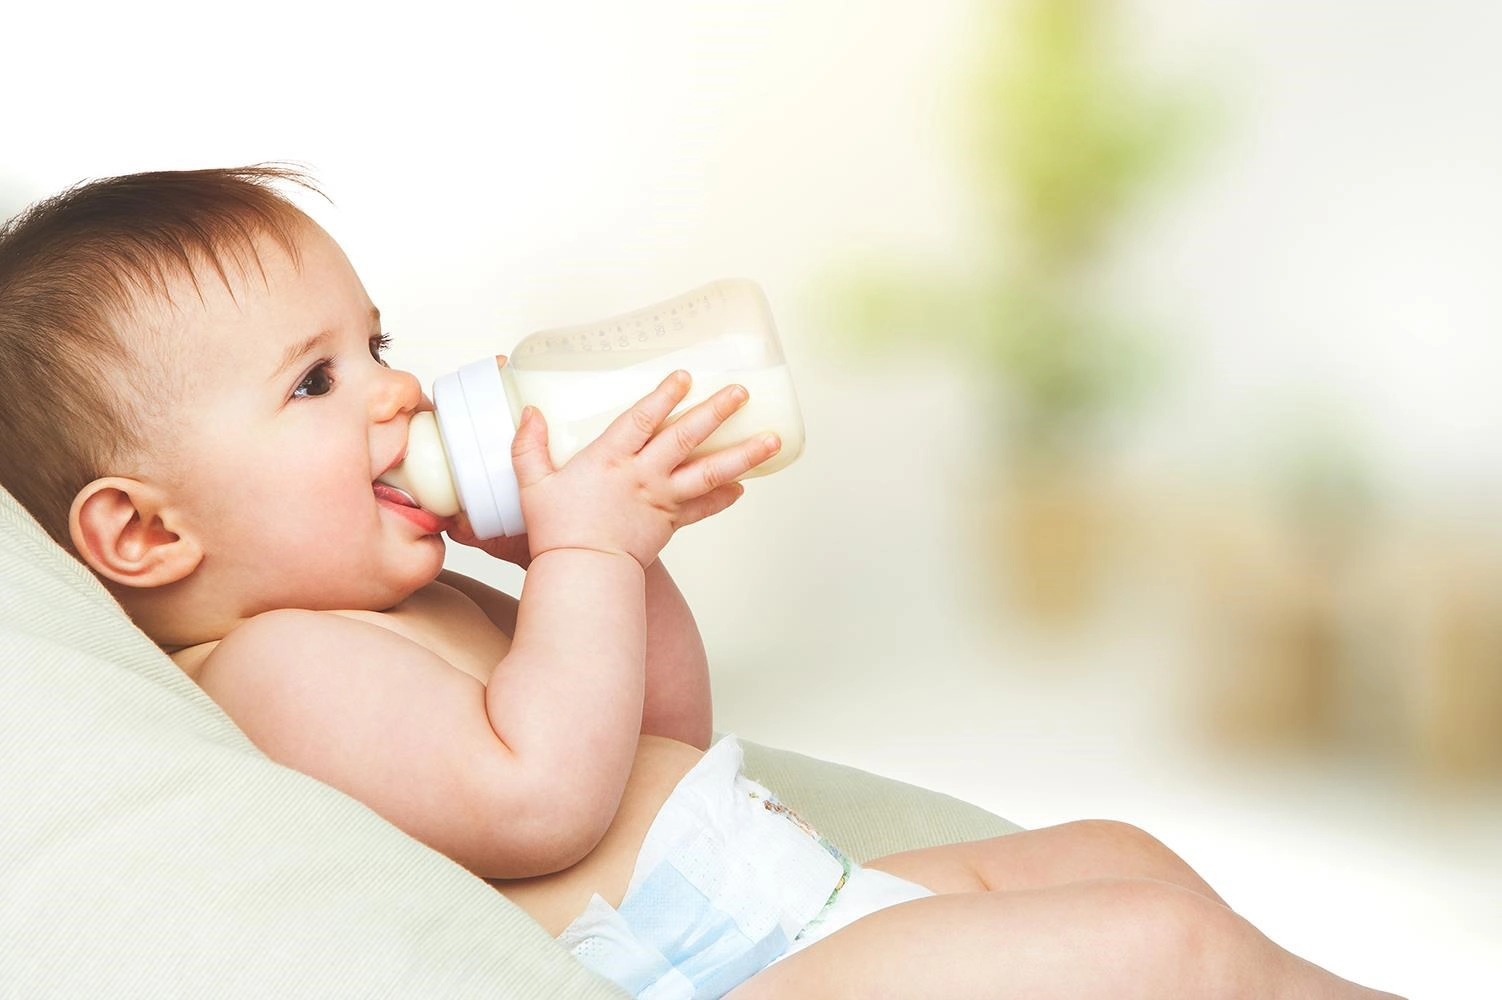  Hướng dẫn sử dụng và bảo quản sữa Friso Gold giúp giữ trọn dưỡng chất